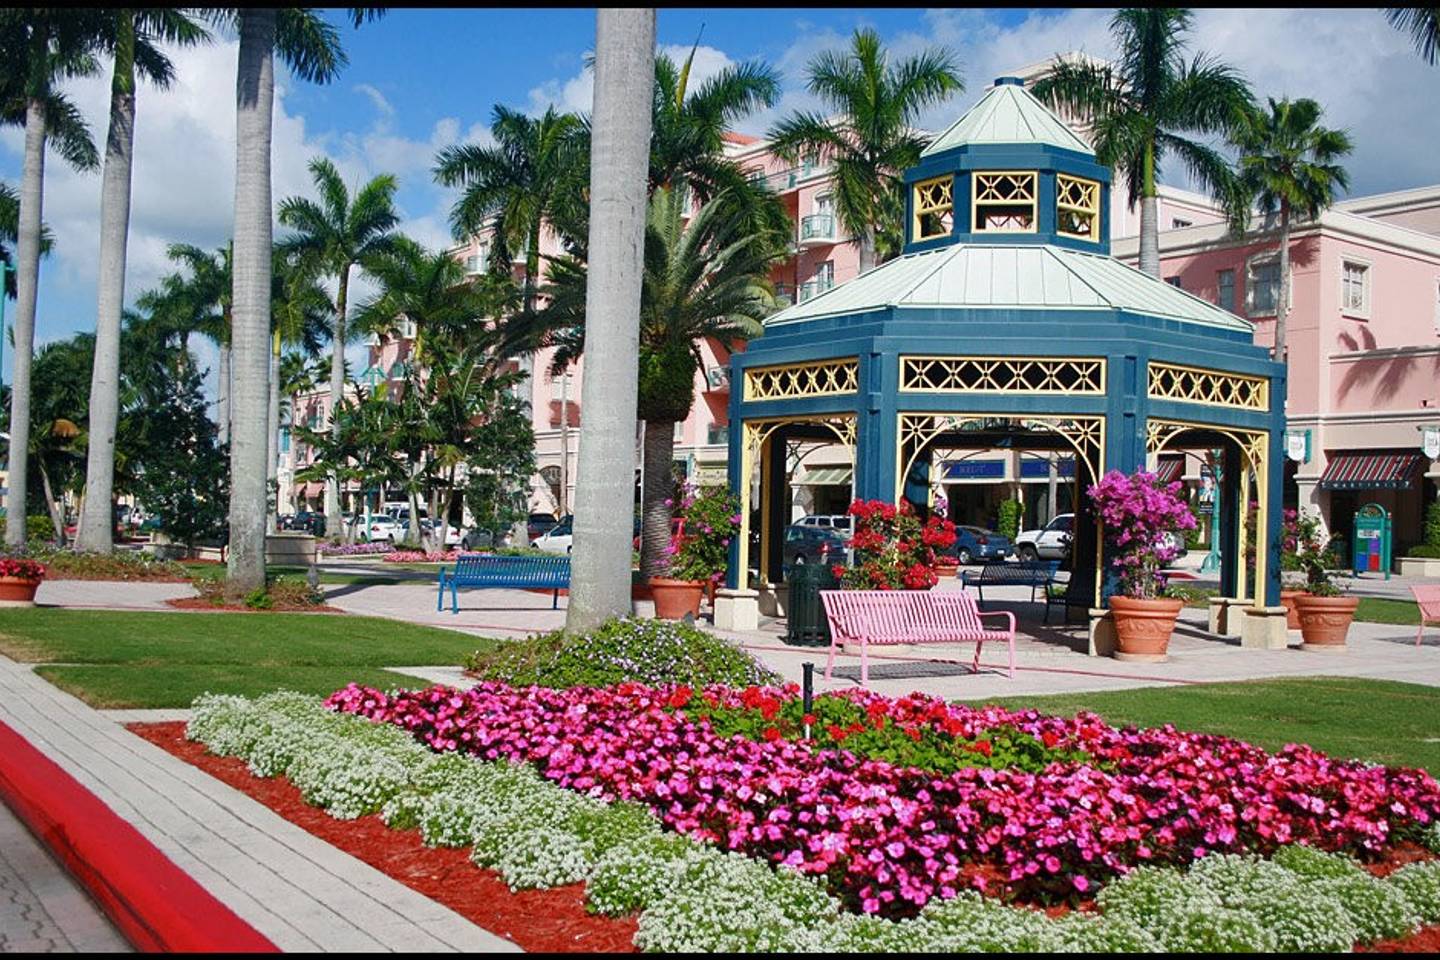 Downtown Boca Raton: Boca Raton, Florida - Live Work Learn Play